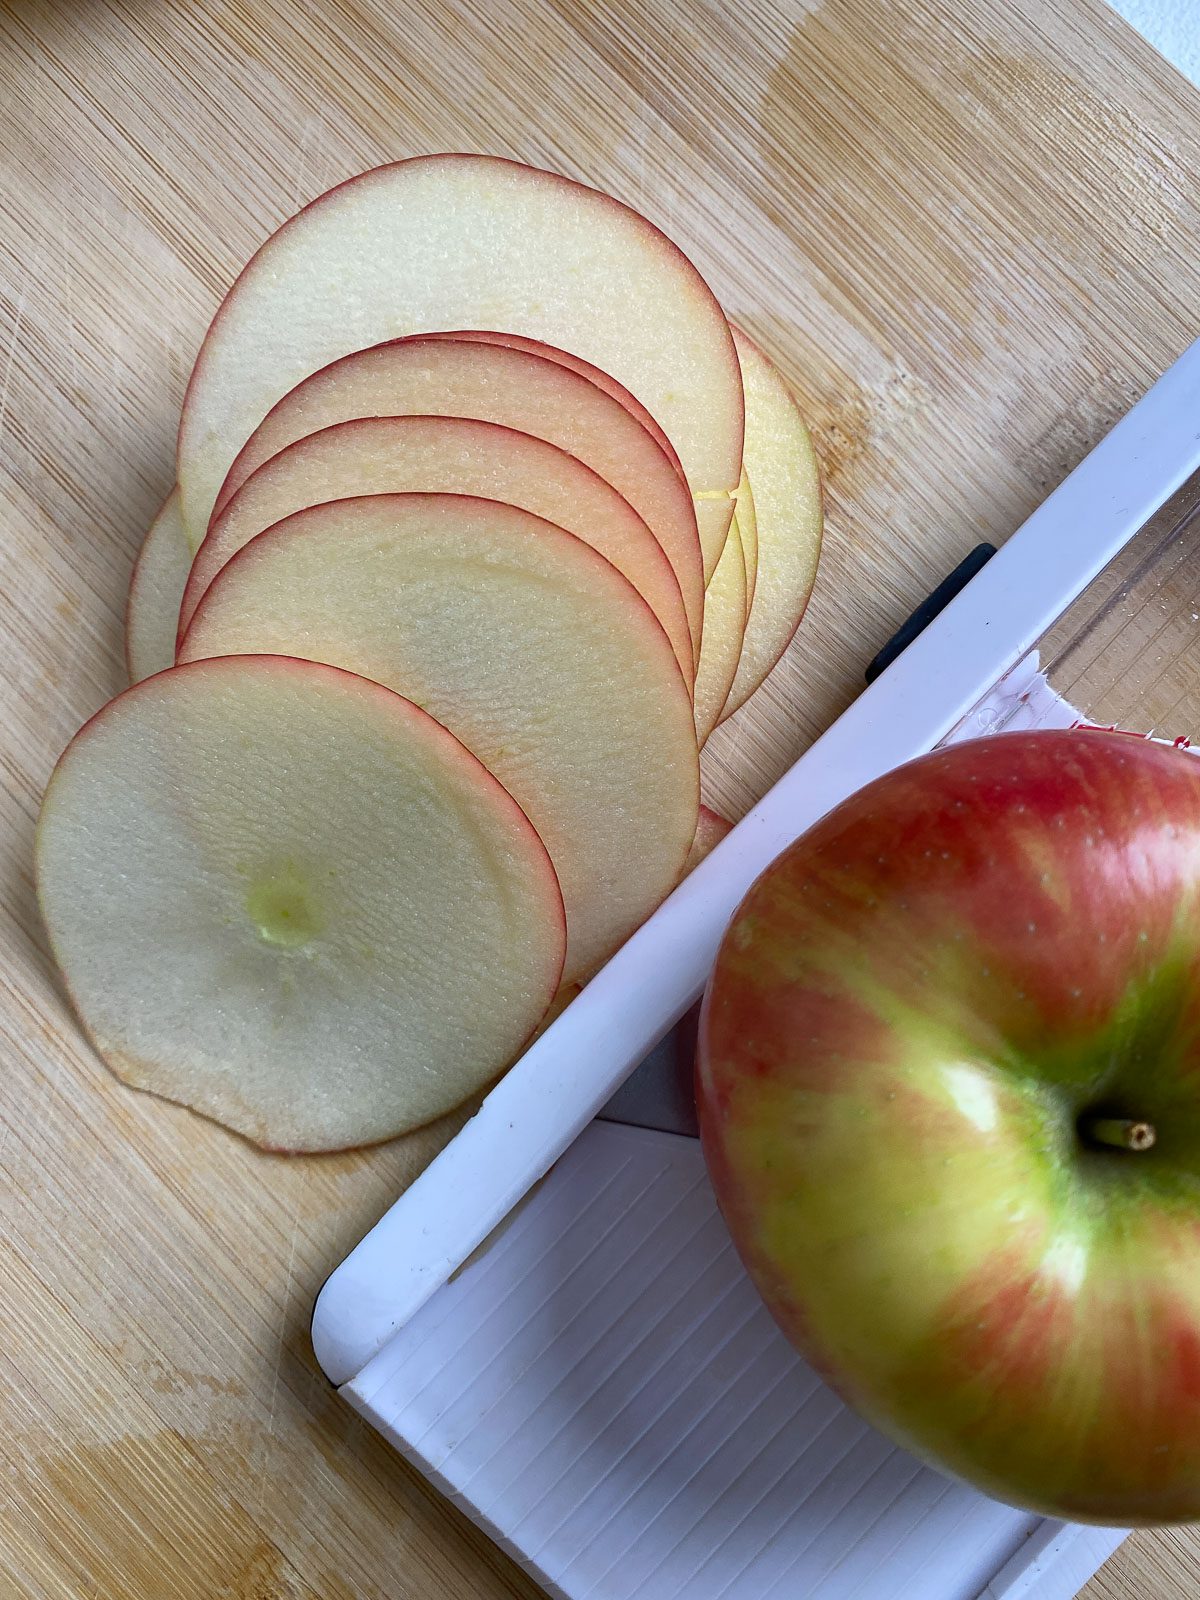 sliced apple alongside whole apple and mandoline